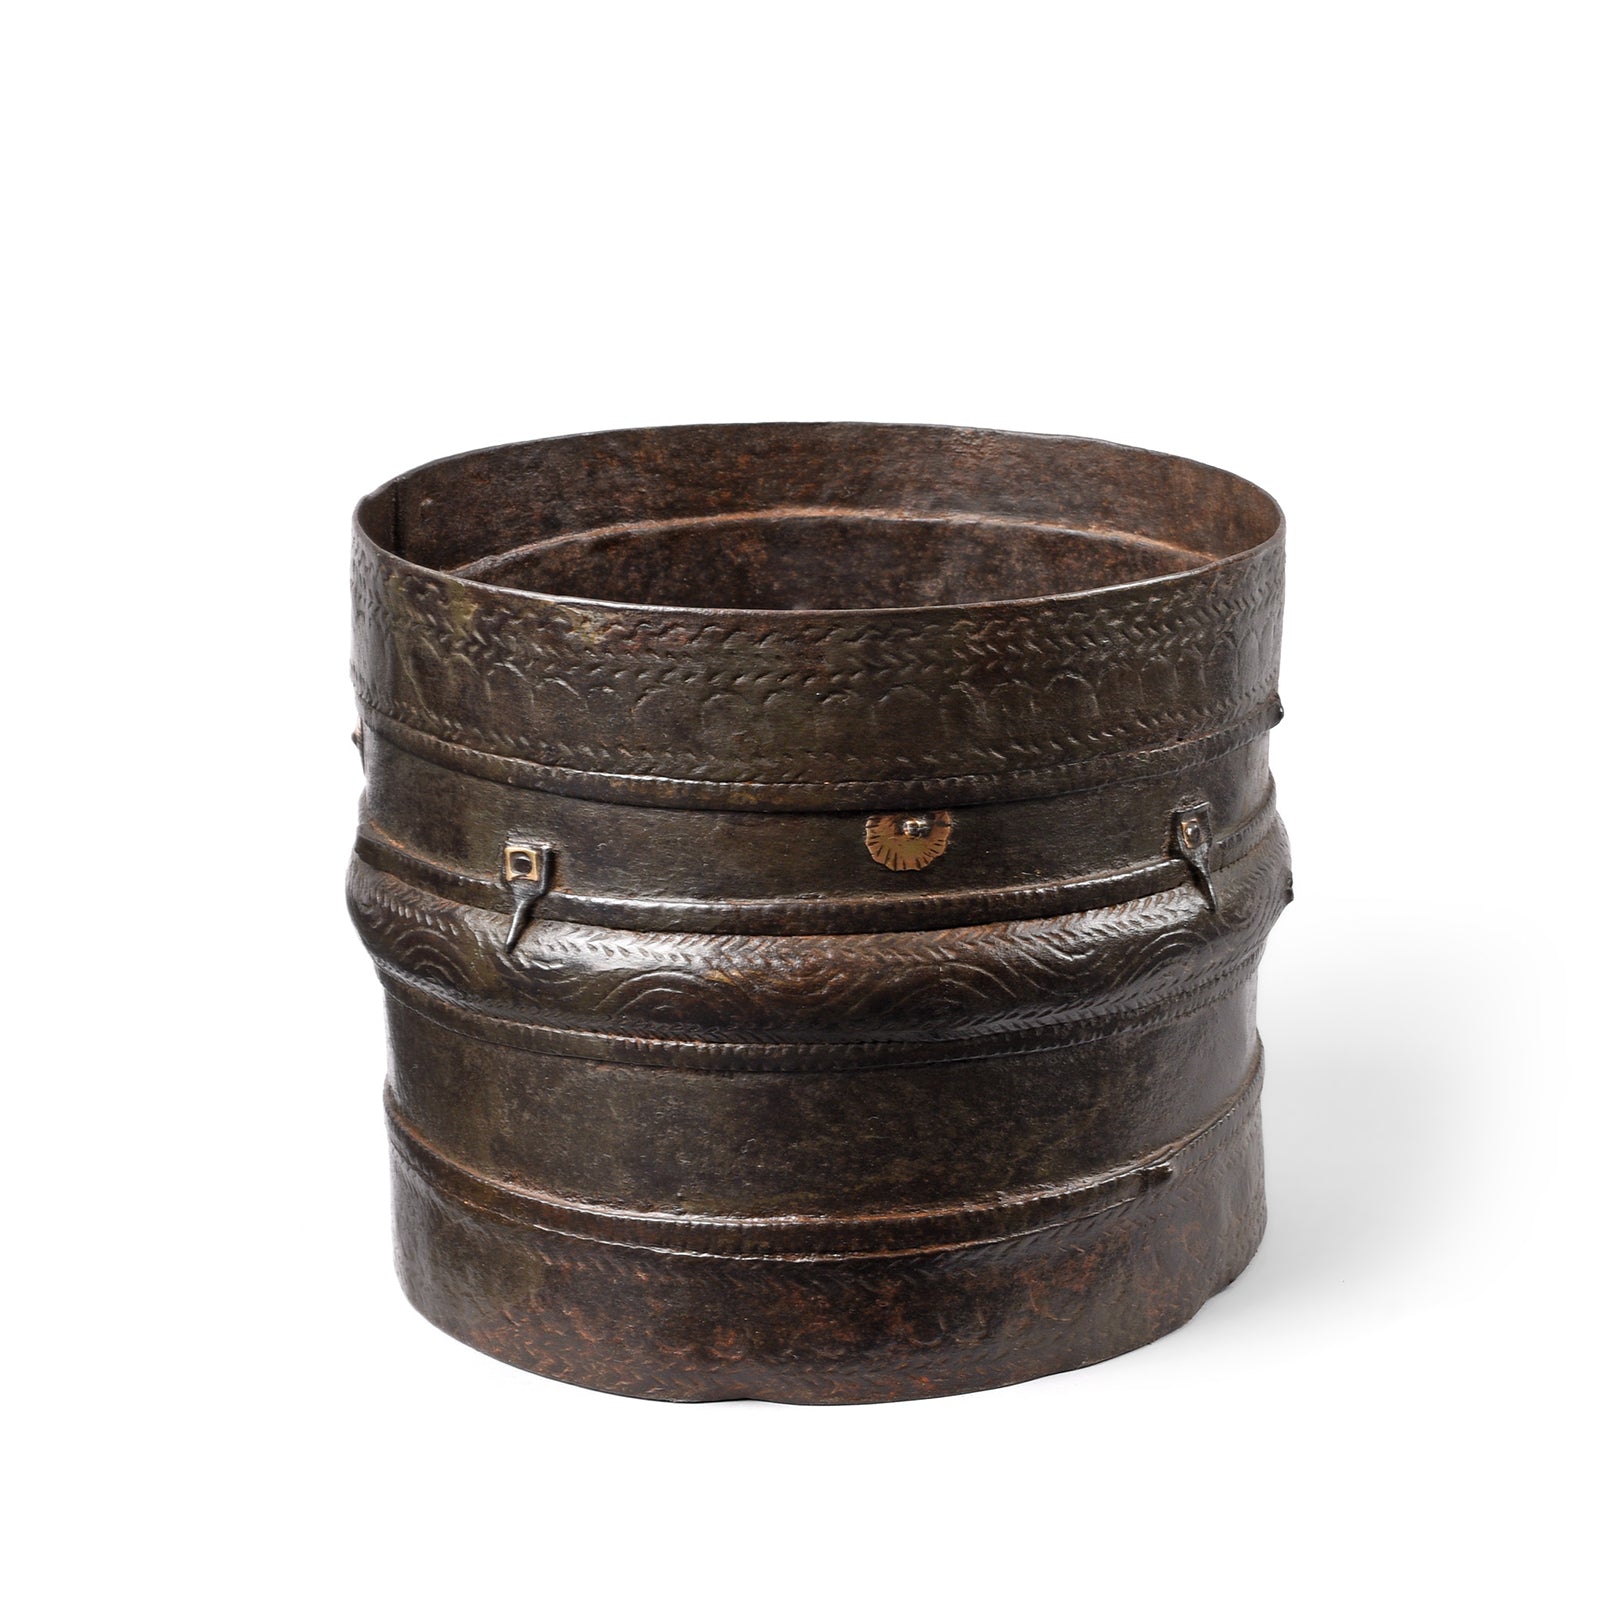 Antique Iron Grain Measure From Kerala | Indigo Antiques